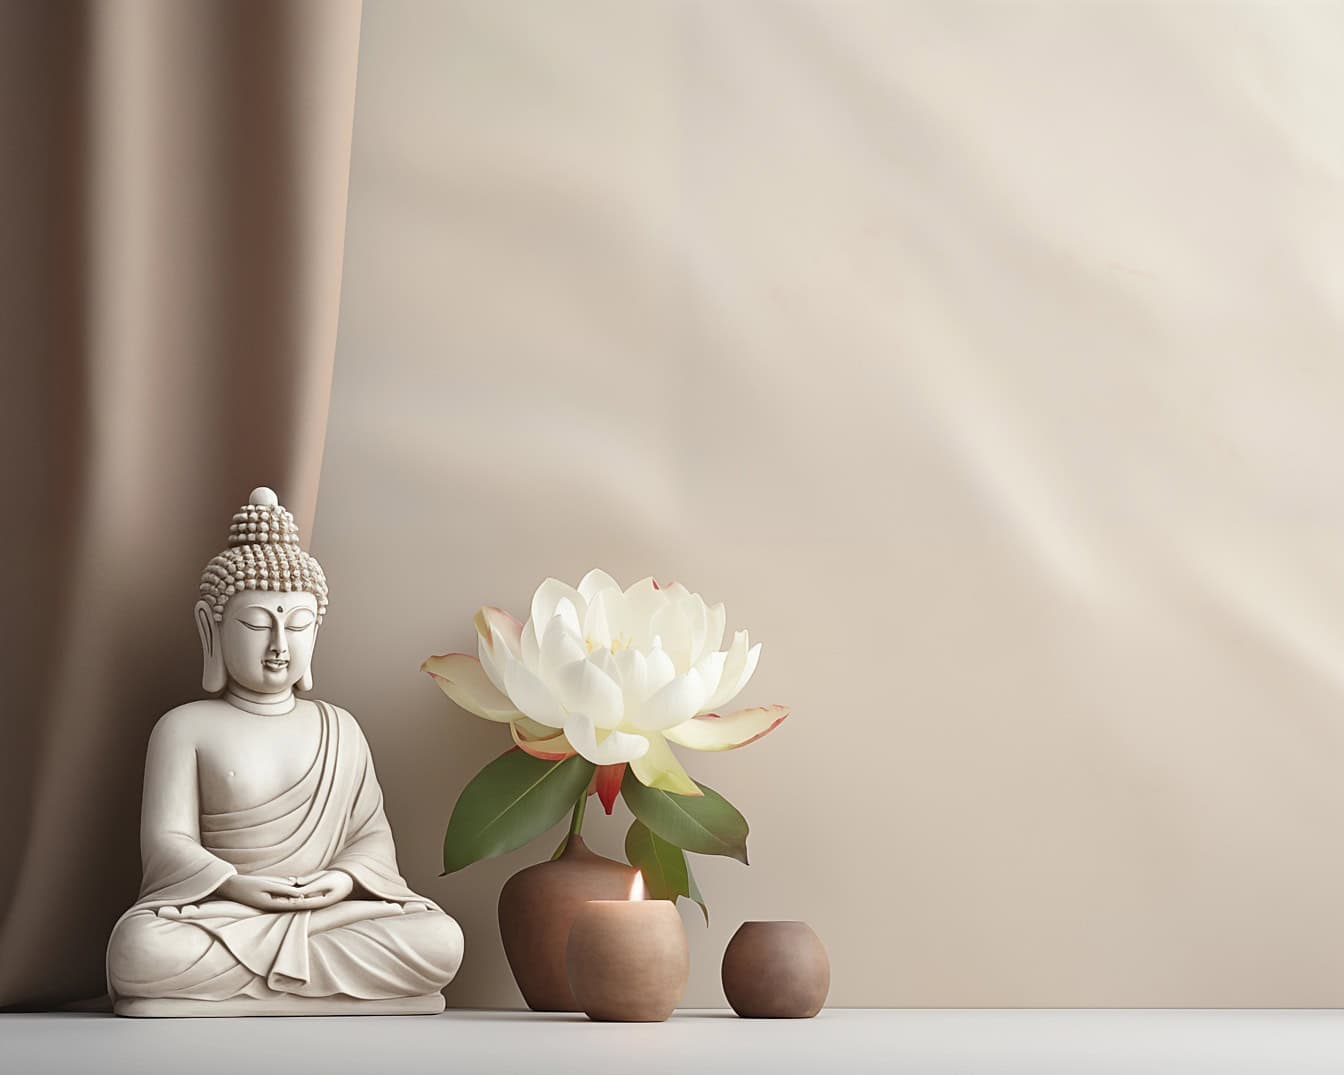 Biały posąg Buddy siedzący obok białego kwiatu lotosu, ilustracja przedstawiająca medytację zen